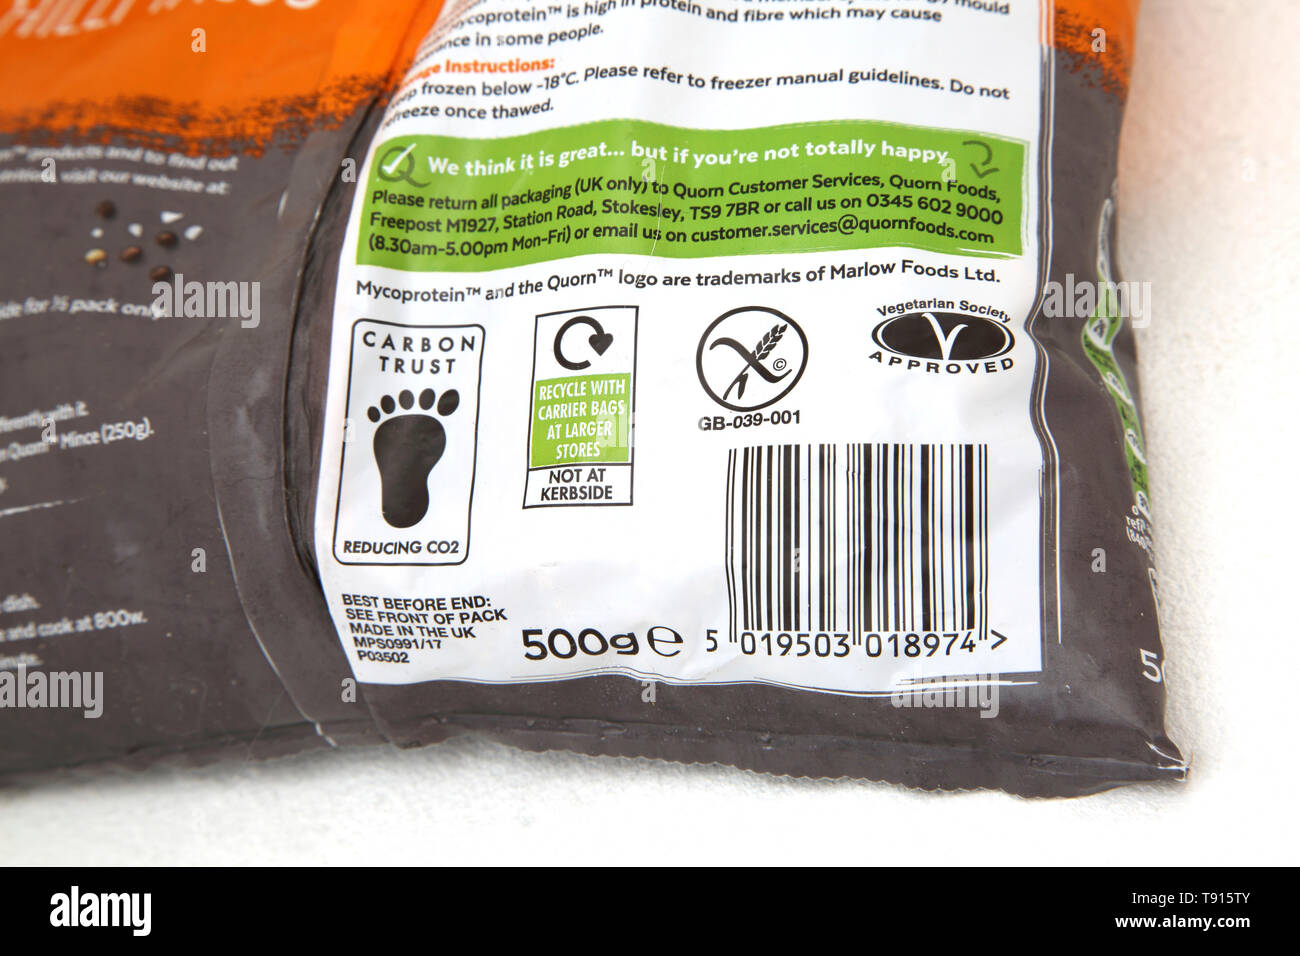 Vegan Quorn tritare finemente il retro della confezione che mostra i simboli per il Carbon Trust, riciclo, senza glutine e Società Vegetariana approvato Foto Stock